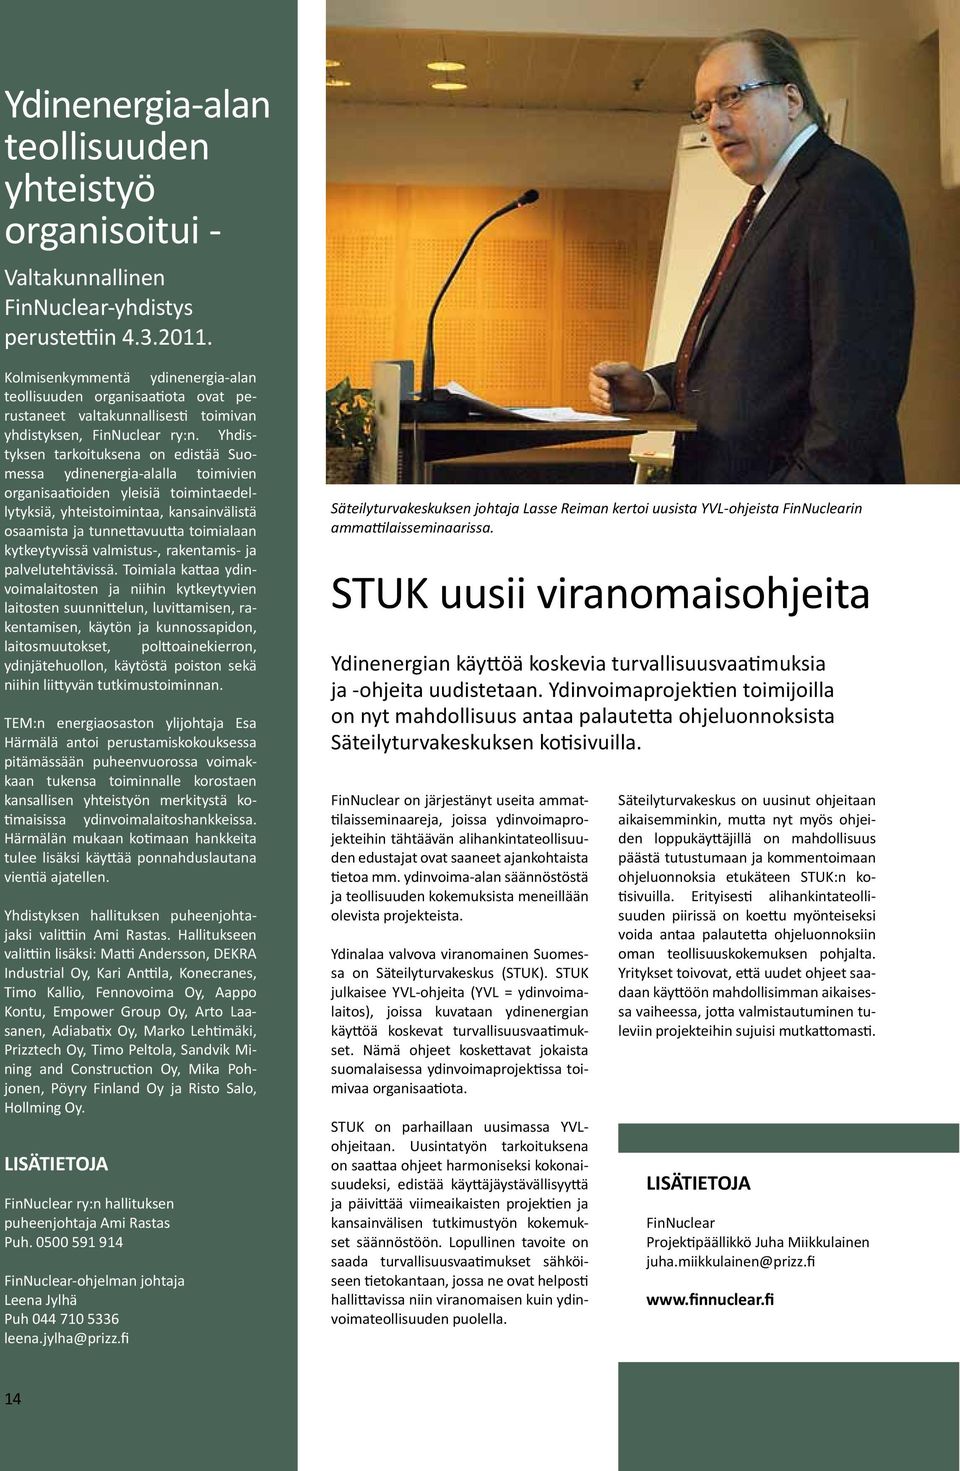 Yhdistyksen tarkoituksena on edistää Suomessa ydinenergia-alalla toimivien organisaatioiden yleisiä toimintaedellytyksiä, yhteistoimintaa, kansainvälistä osaamista ja tunnettavuutta toimialaan